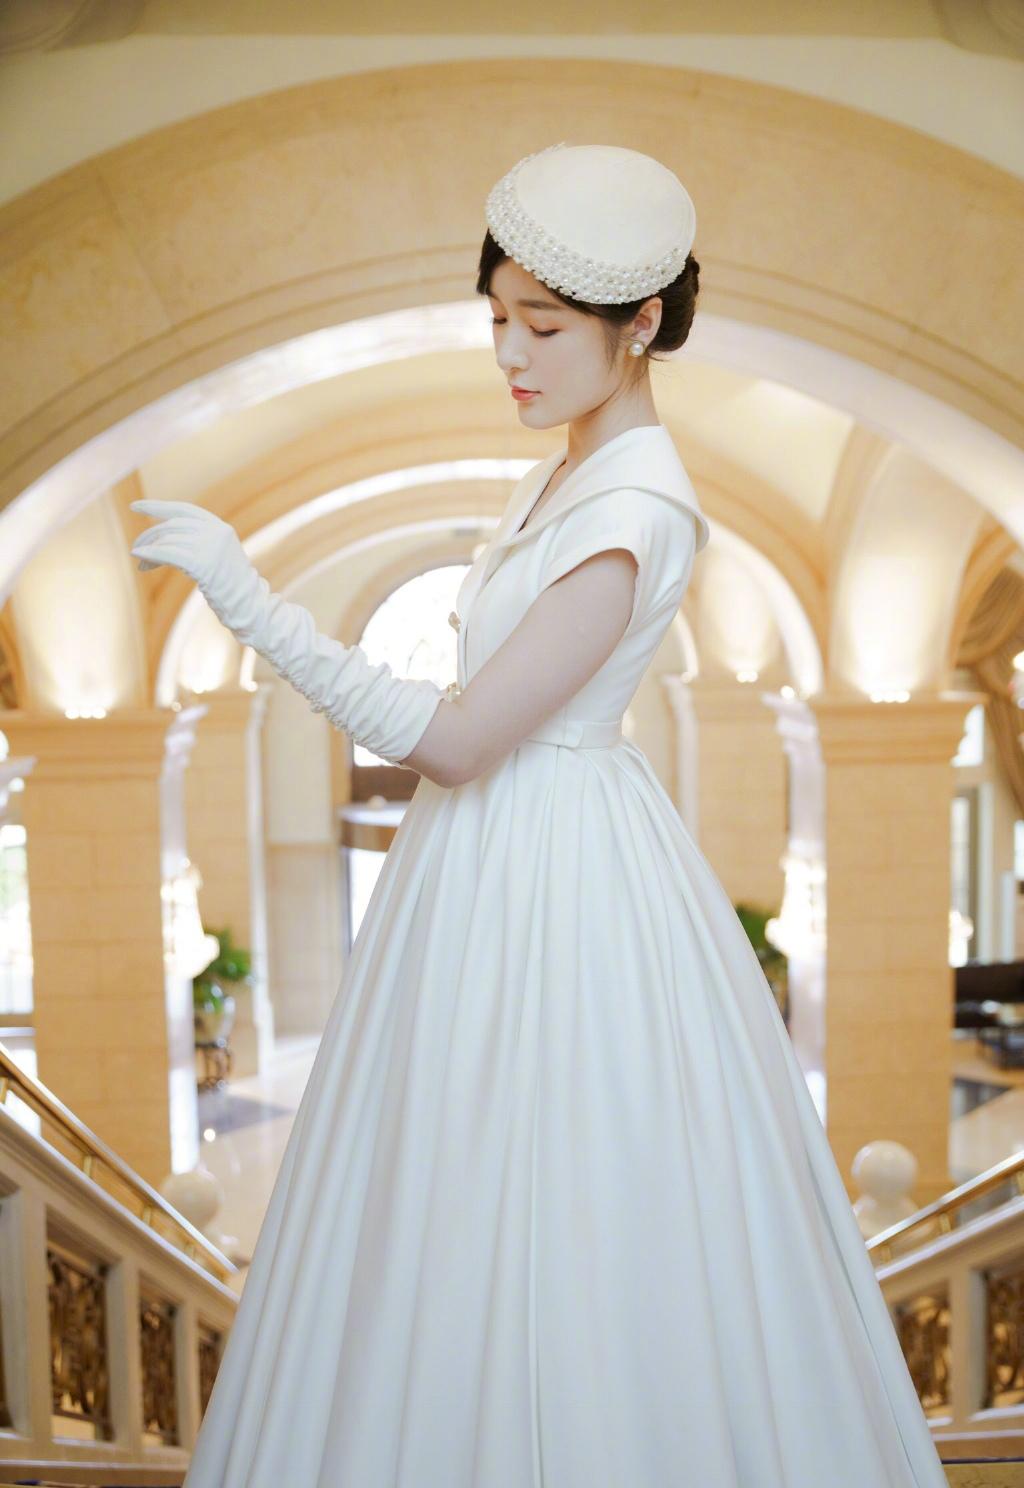 徐娇北京国际电影节白色公主礼服高贵优雅